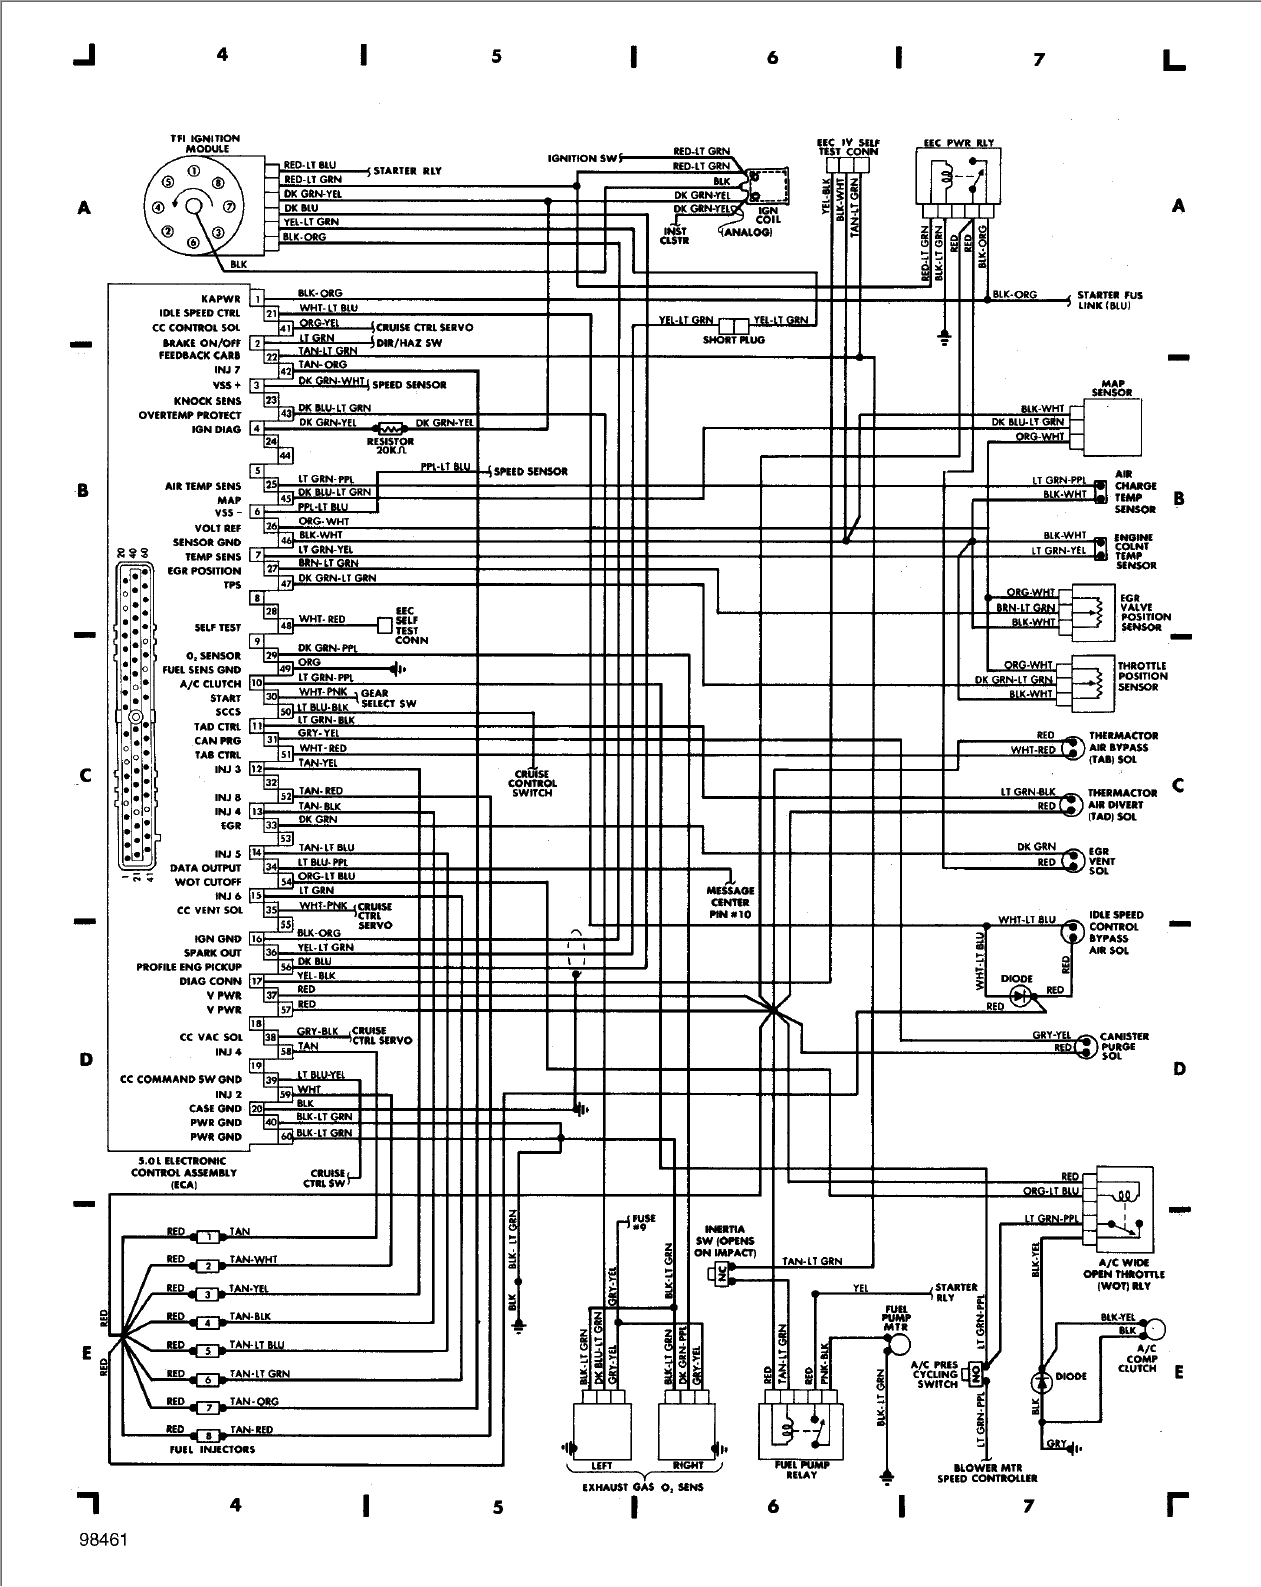 2005 Town Car Wiring Diagram Full Hd Version Wiring Diagram intended for Er 5 Wiring Diagram